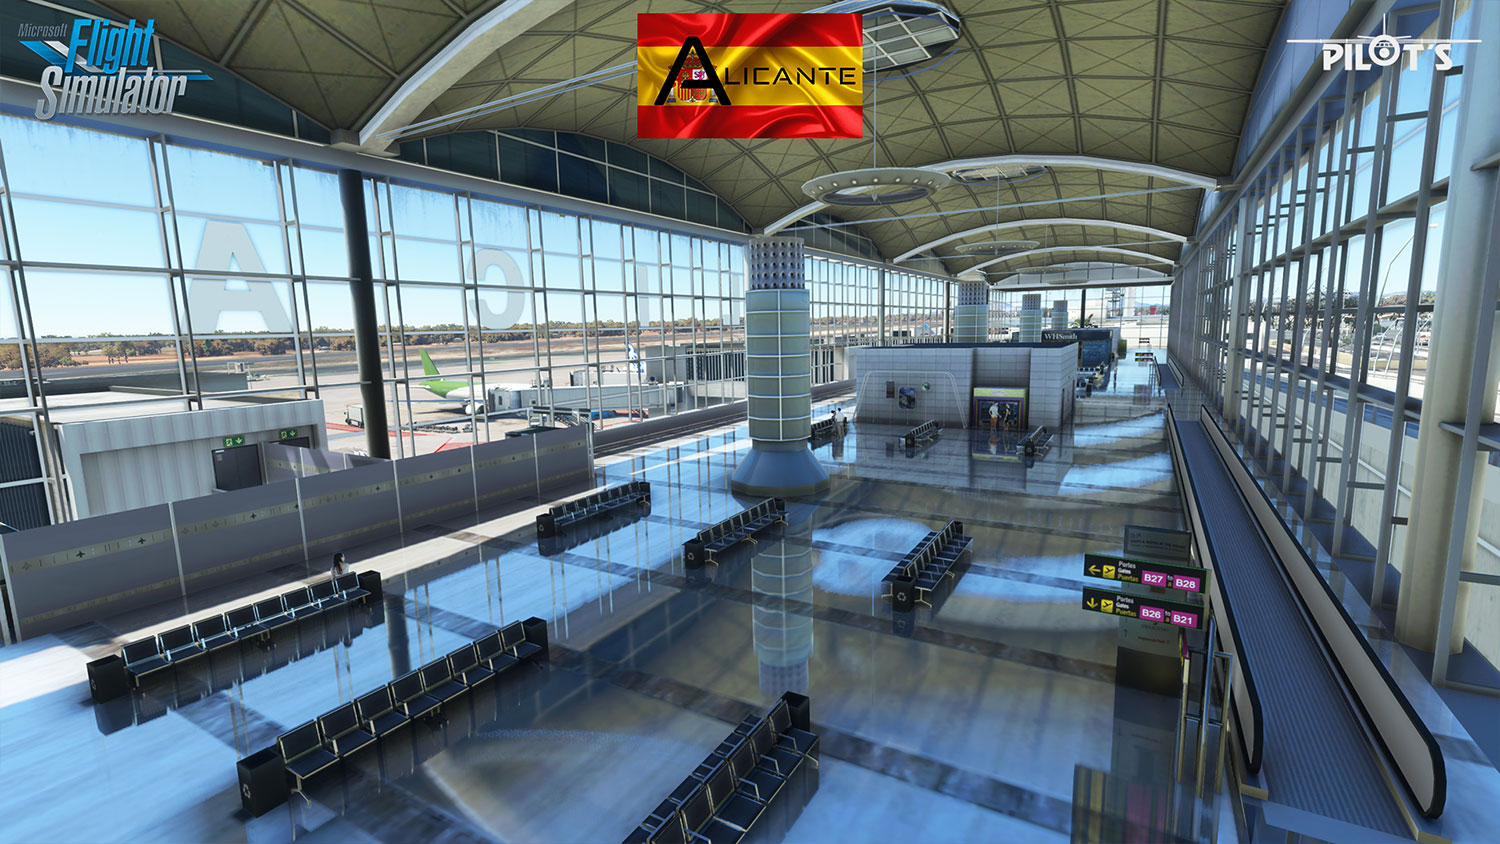 PILOT'S - LEAL - Alicante Airport MSFS